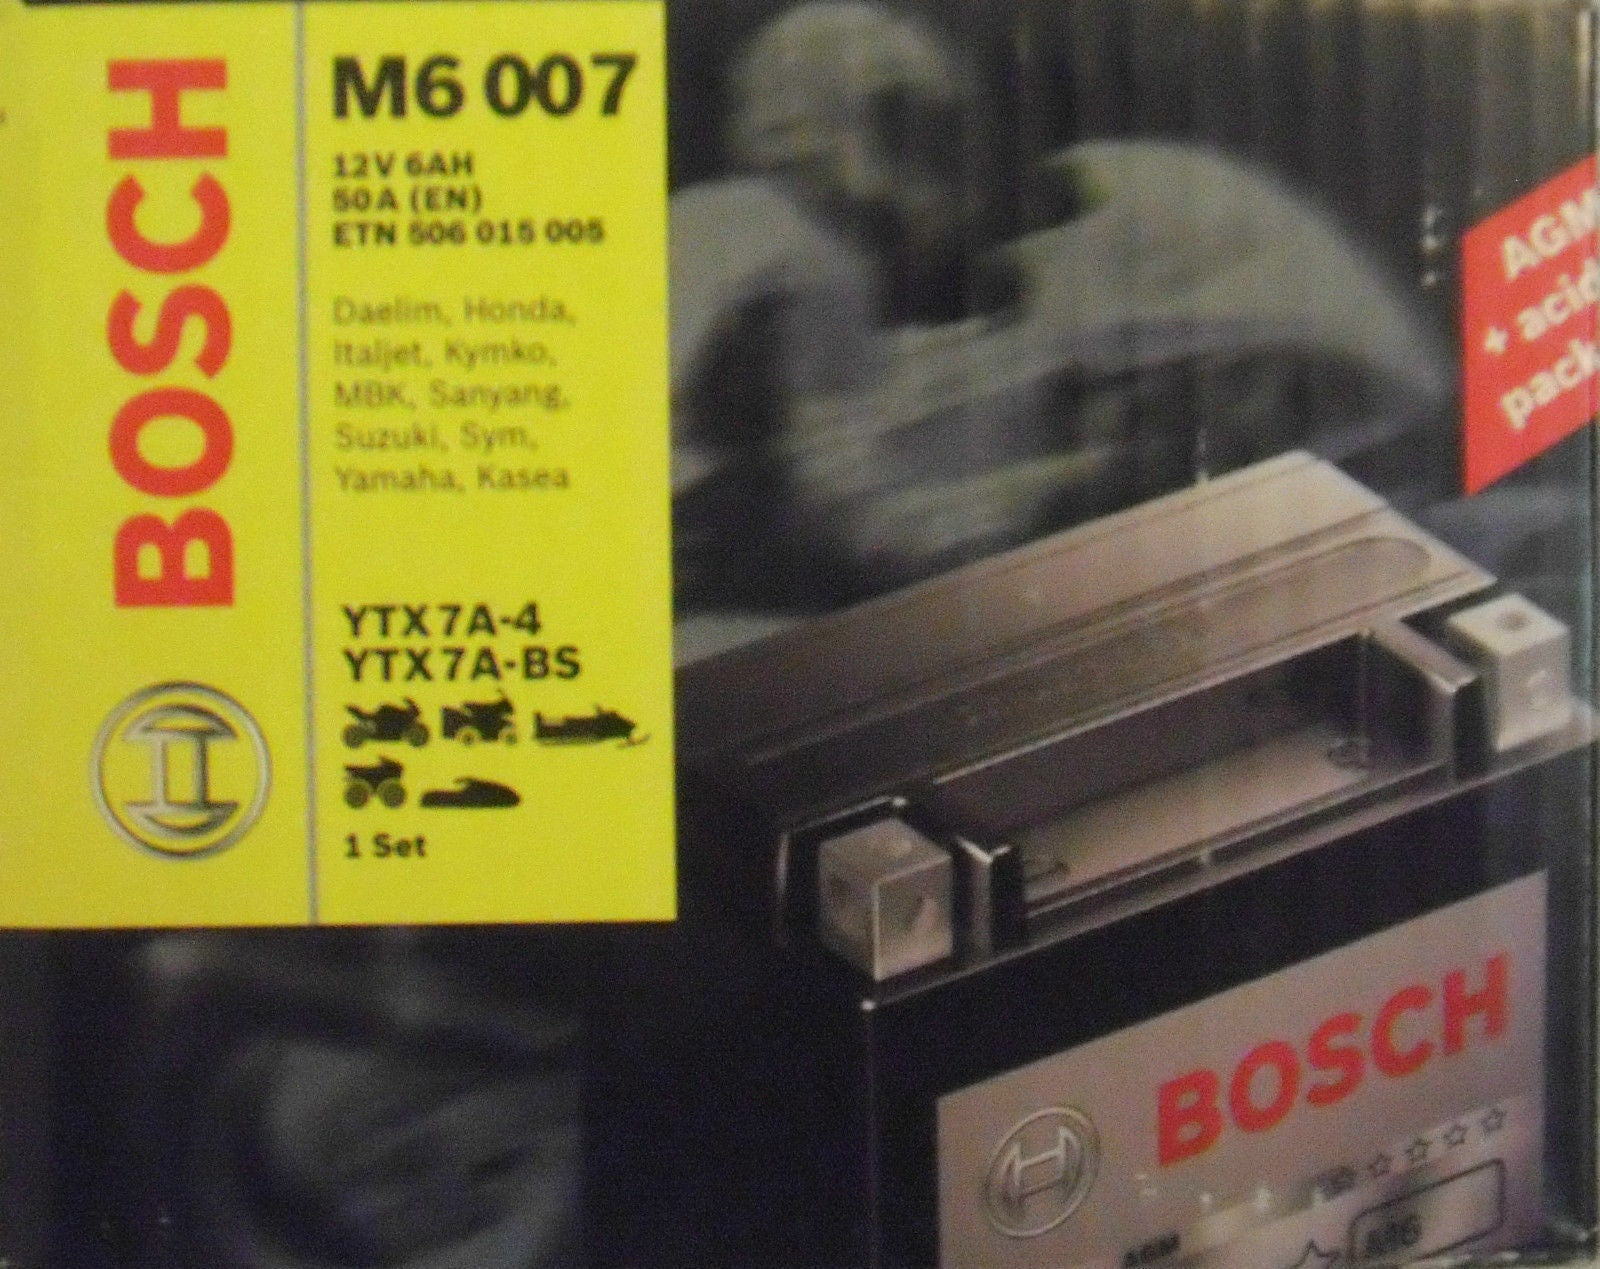 Bosch M6 Motorradbatterie Batterie 6AH für Suzuki Yamaha MBK YTX7A-4  YTX7A-BS - Flex-Autoteile